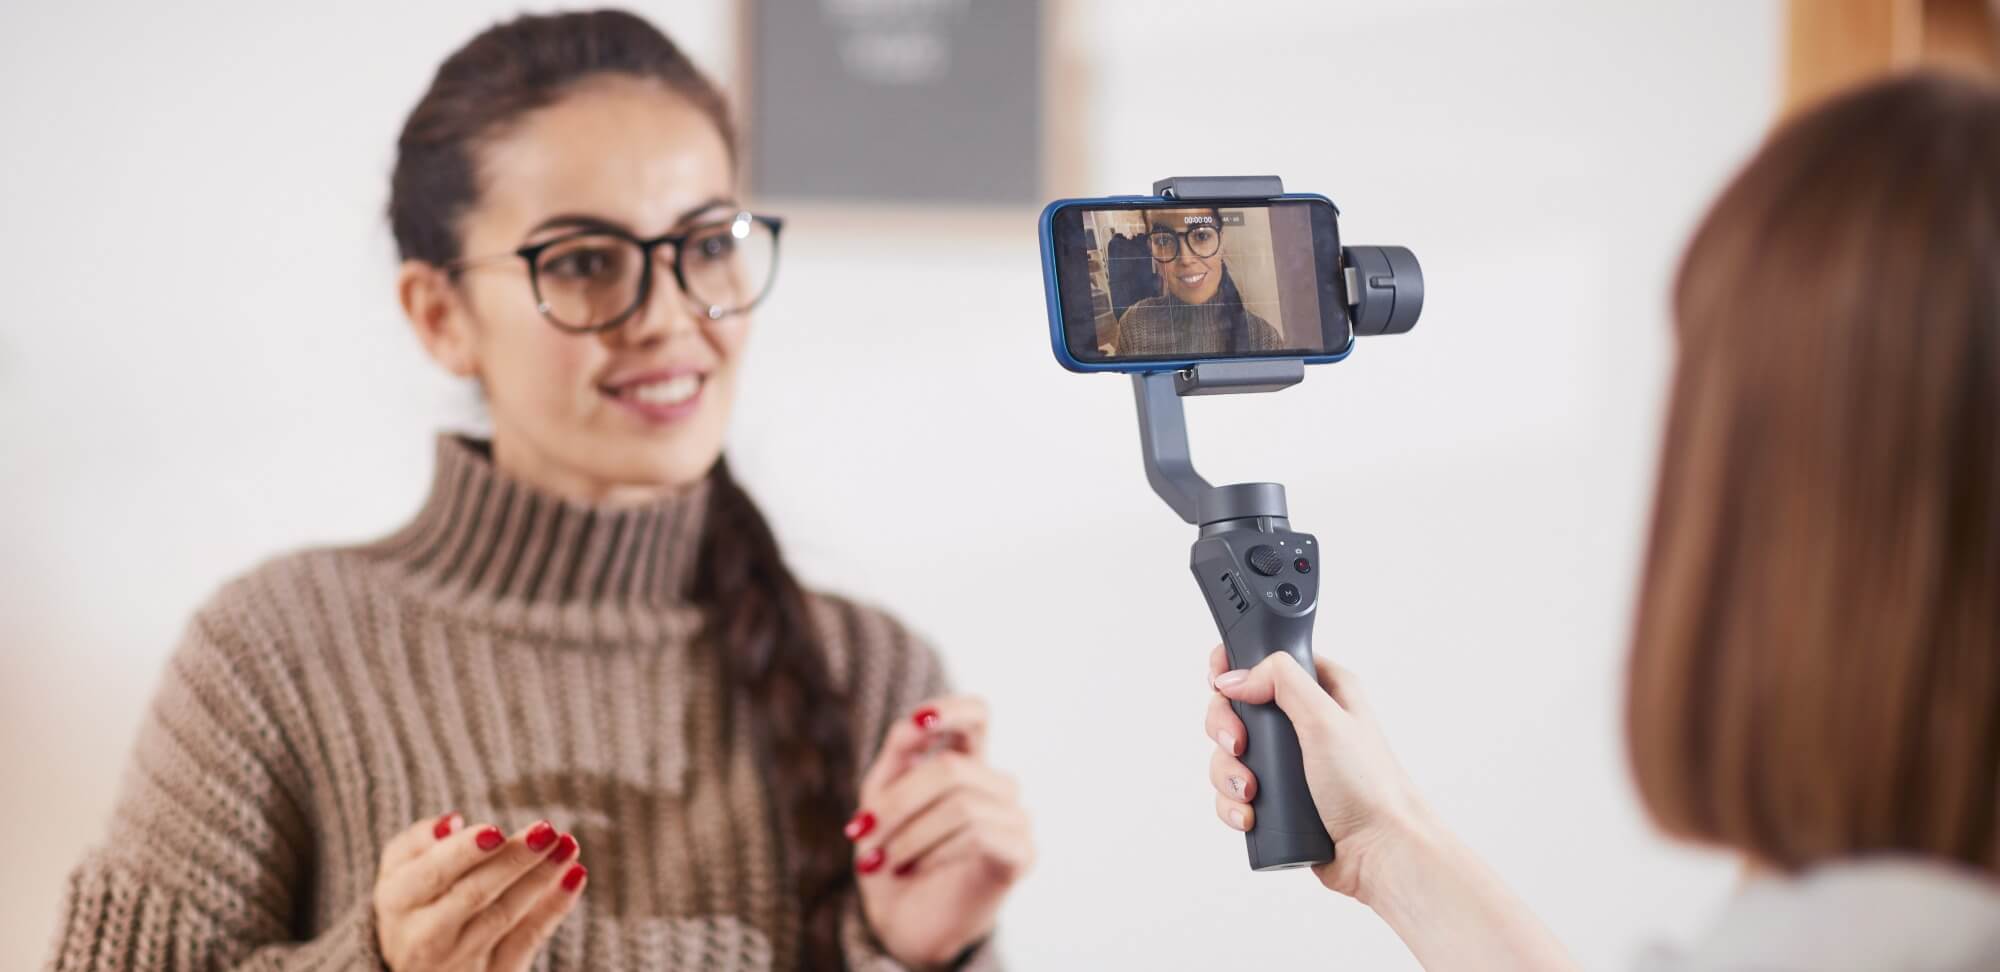 studygram: imagem de uma moça sendo filmada por um celular por outra pessoa